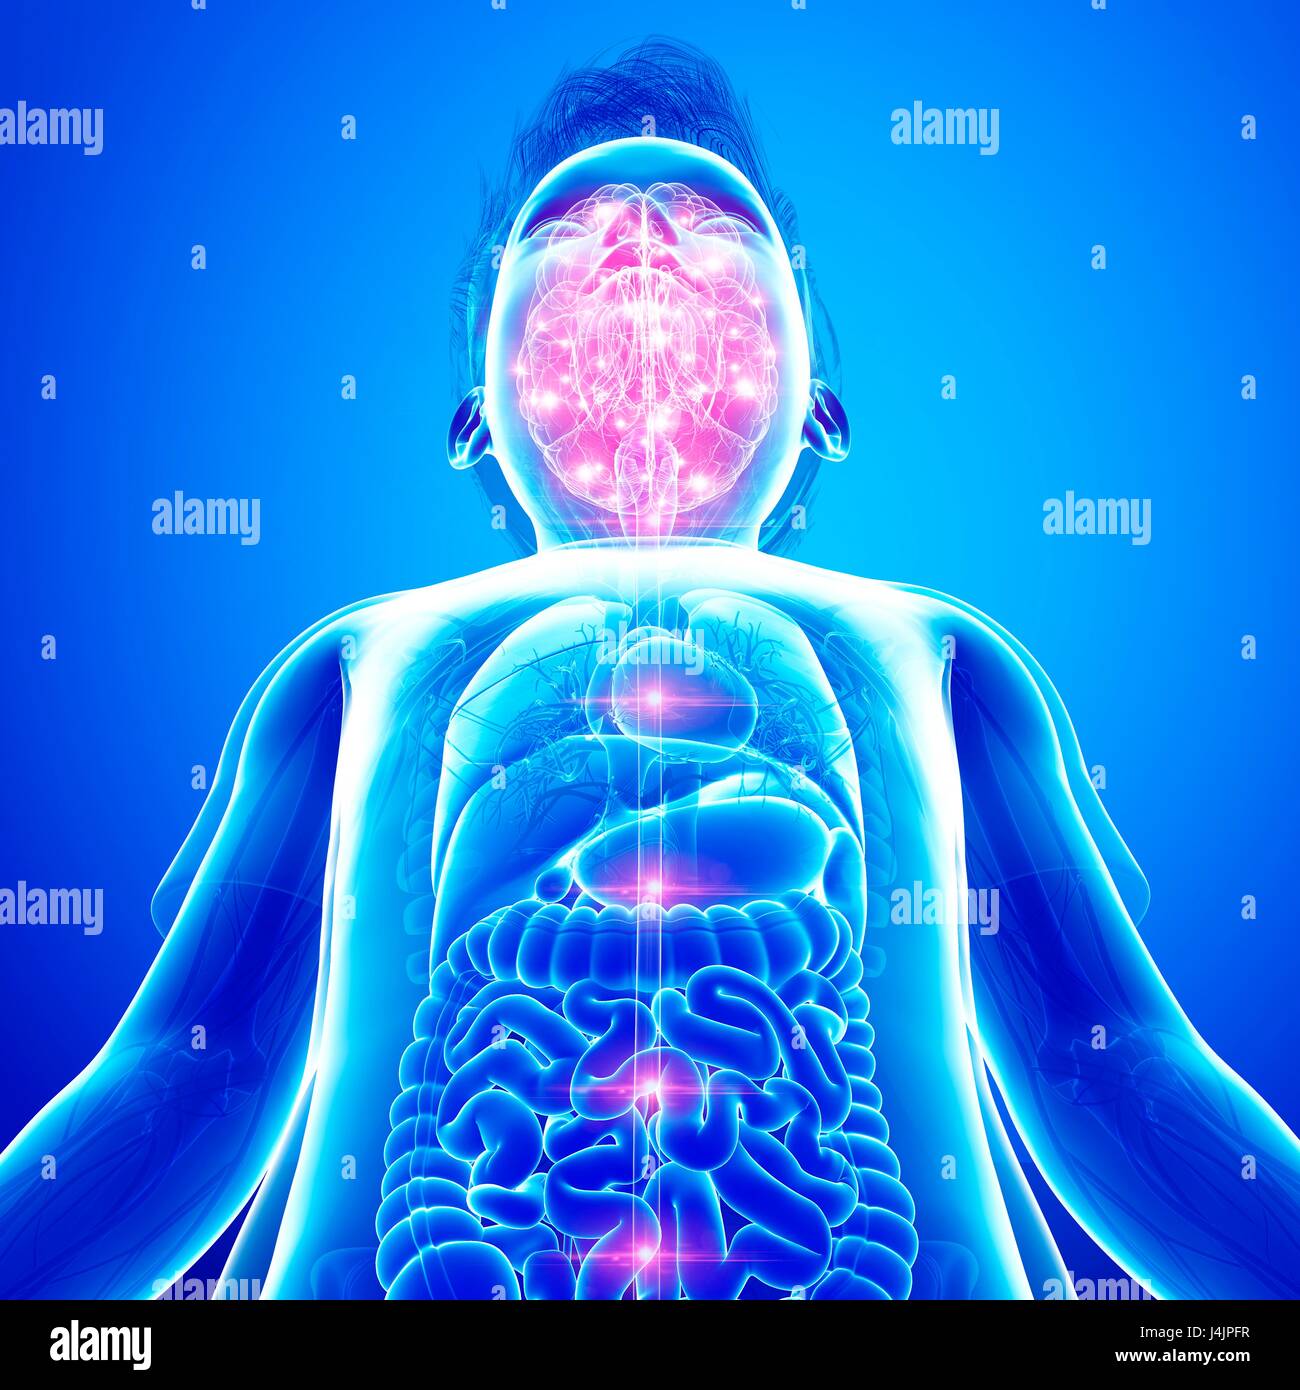 Illustration of human brain activity. Stock Photo